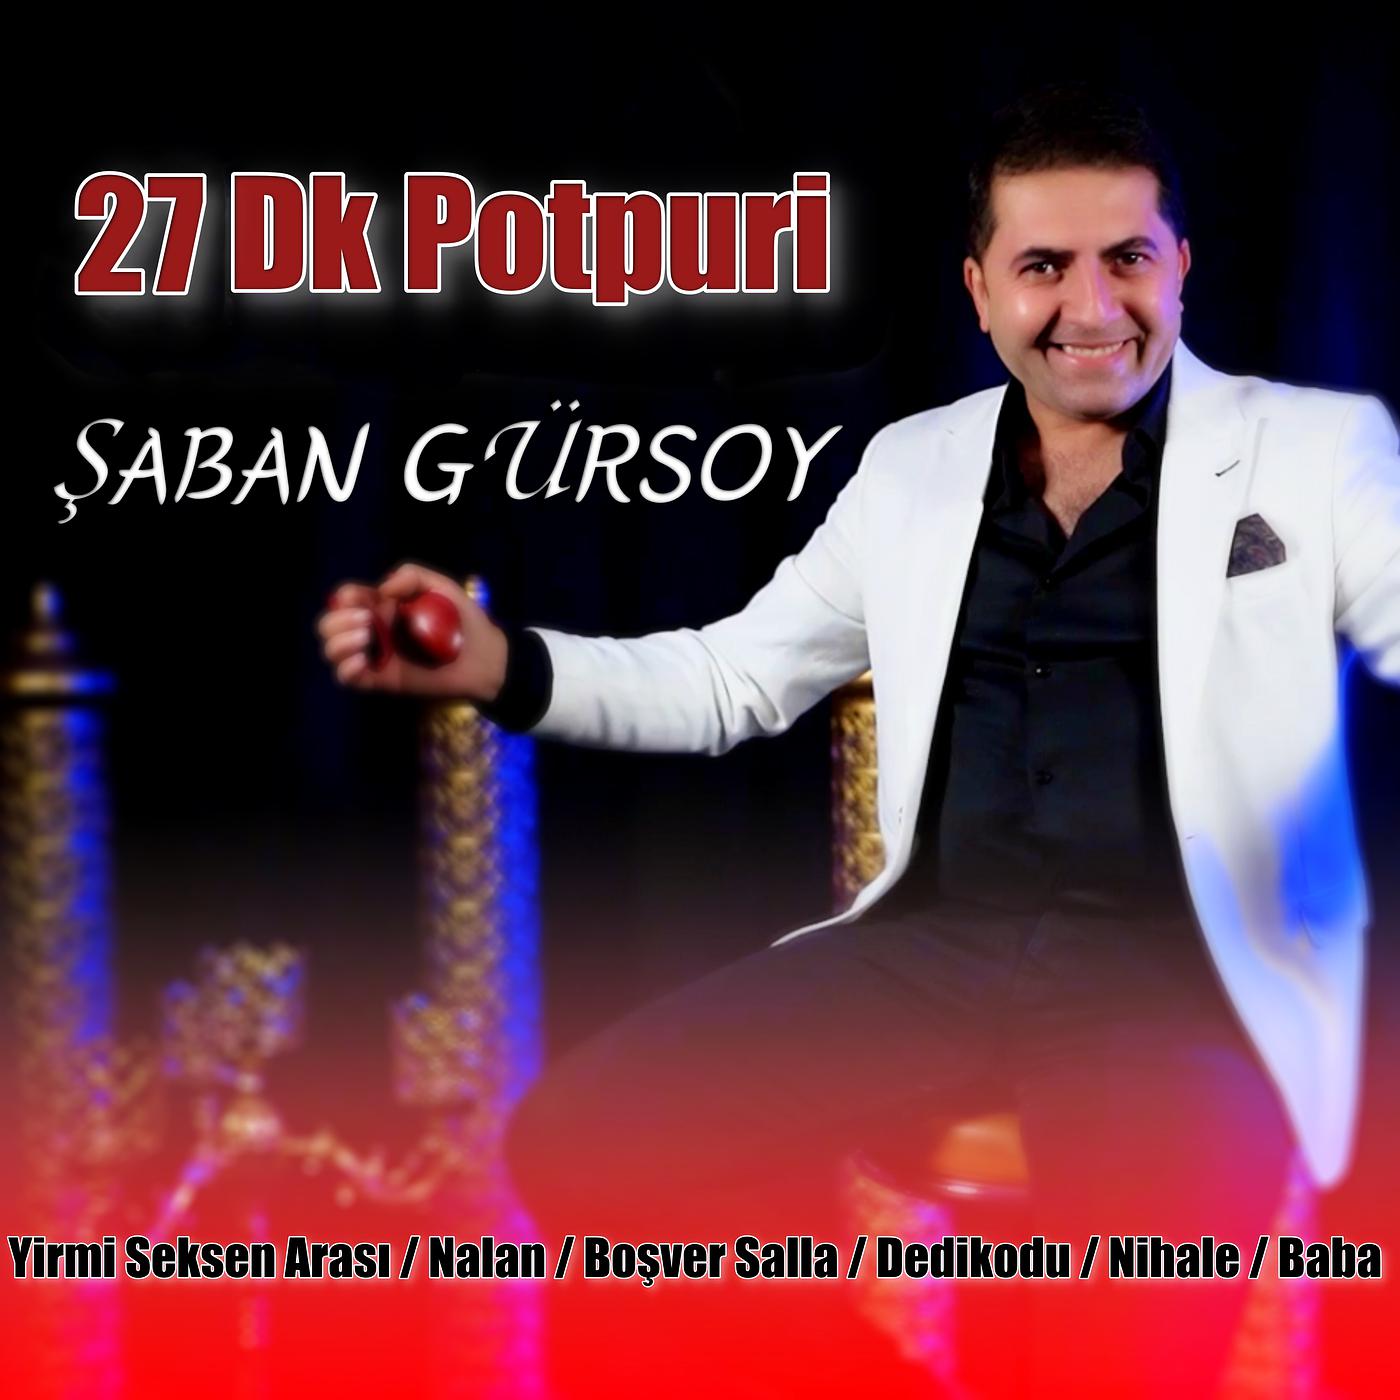 Постер альбома Yirmi Seksen Arası / Nalan / Boşver Salla / Dedikodu / Nihale / Baba (27 Dk Potpuri)